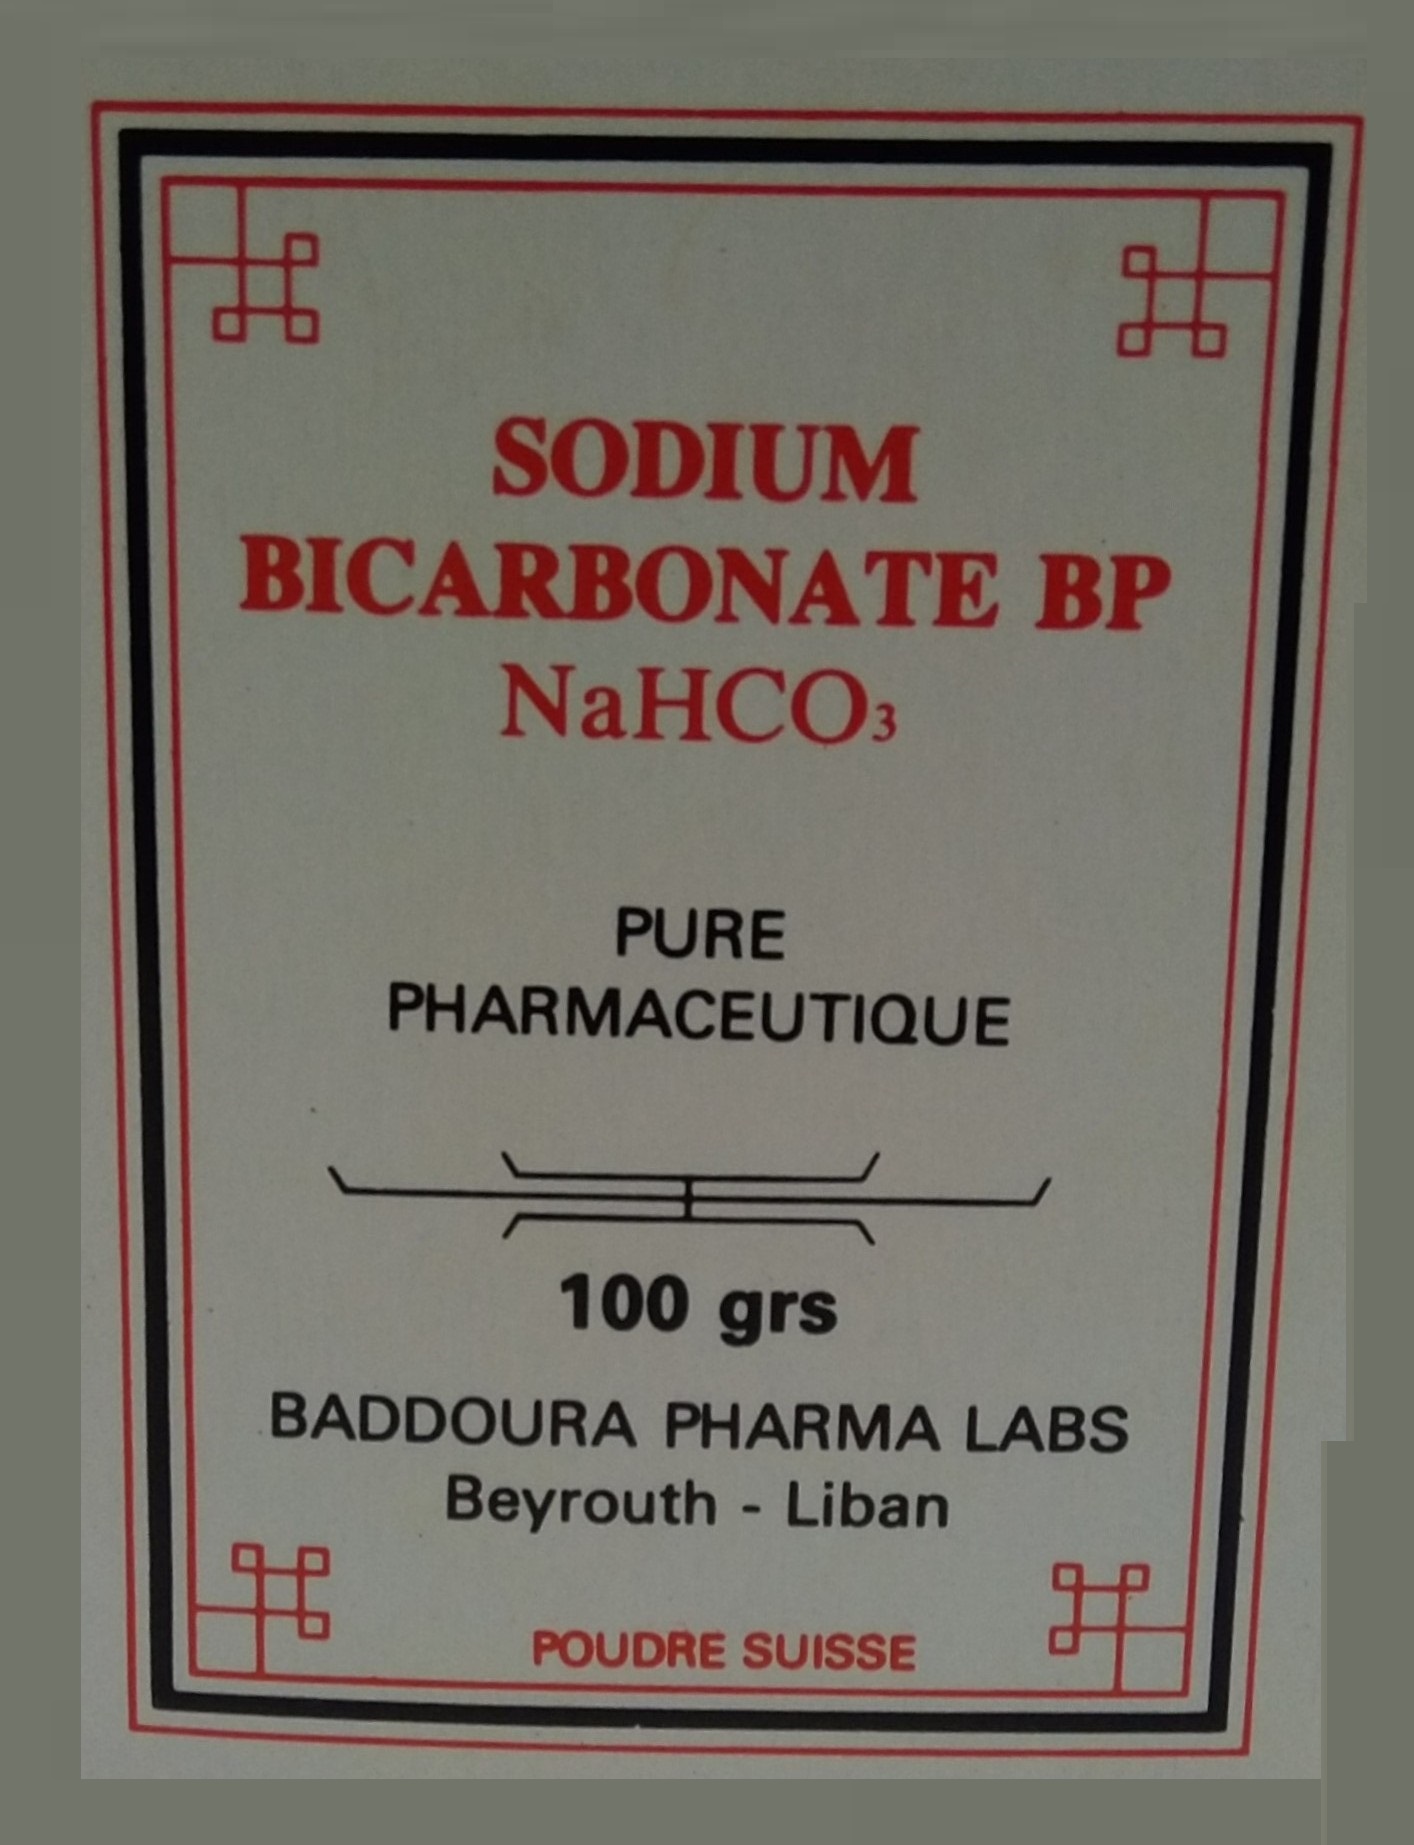 Sodium Bicarbonate Baddoura